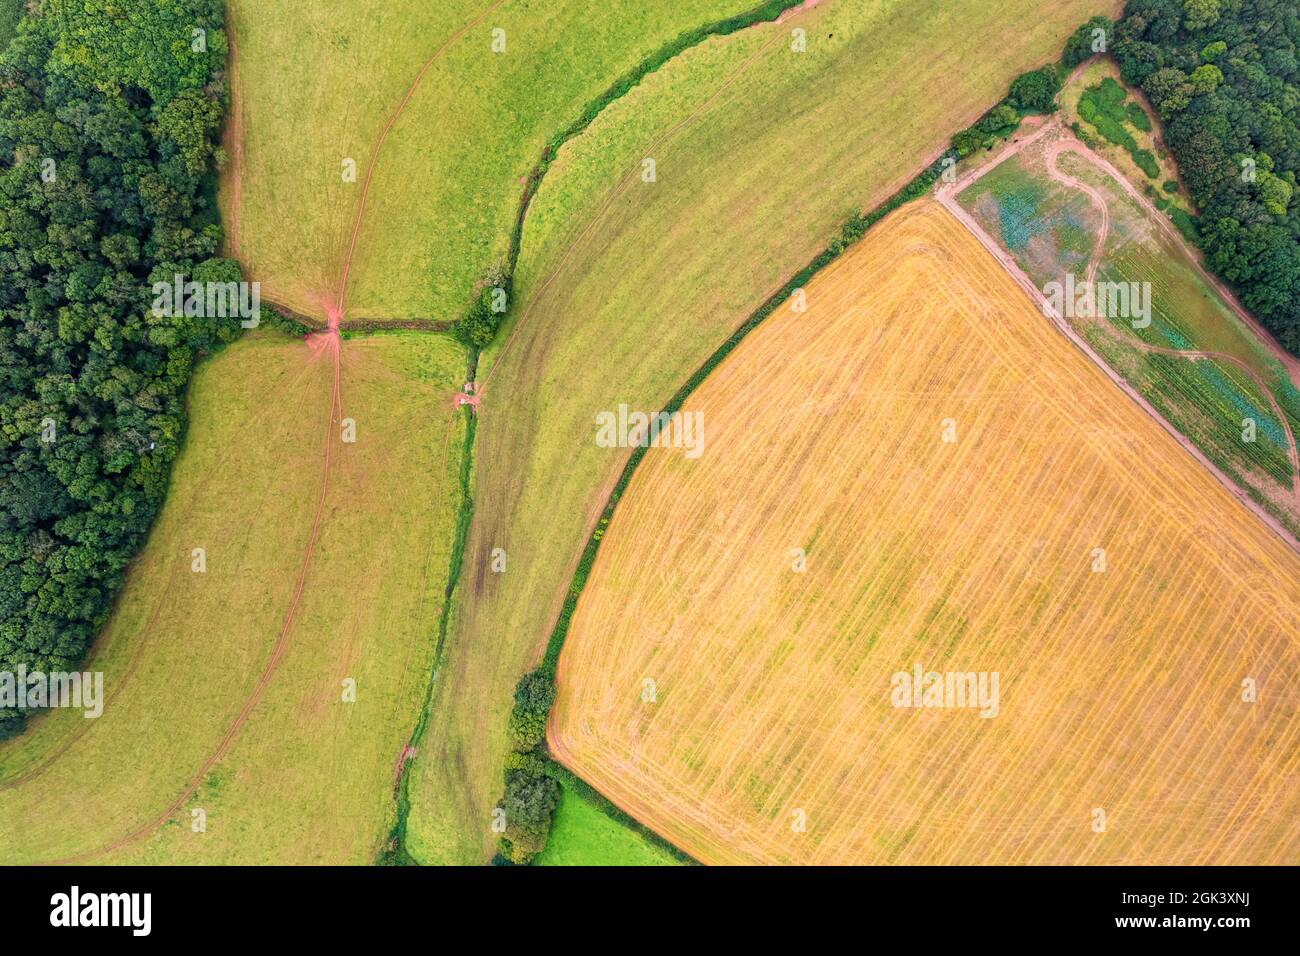 Photographie de drone - champs et prairies au-dessus de Torbay, Torquay, Devon, Angleterre, Europe Banque D'Images